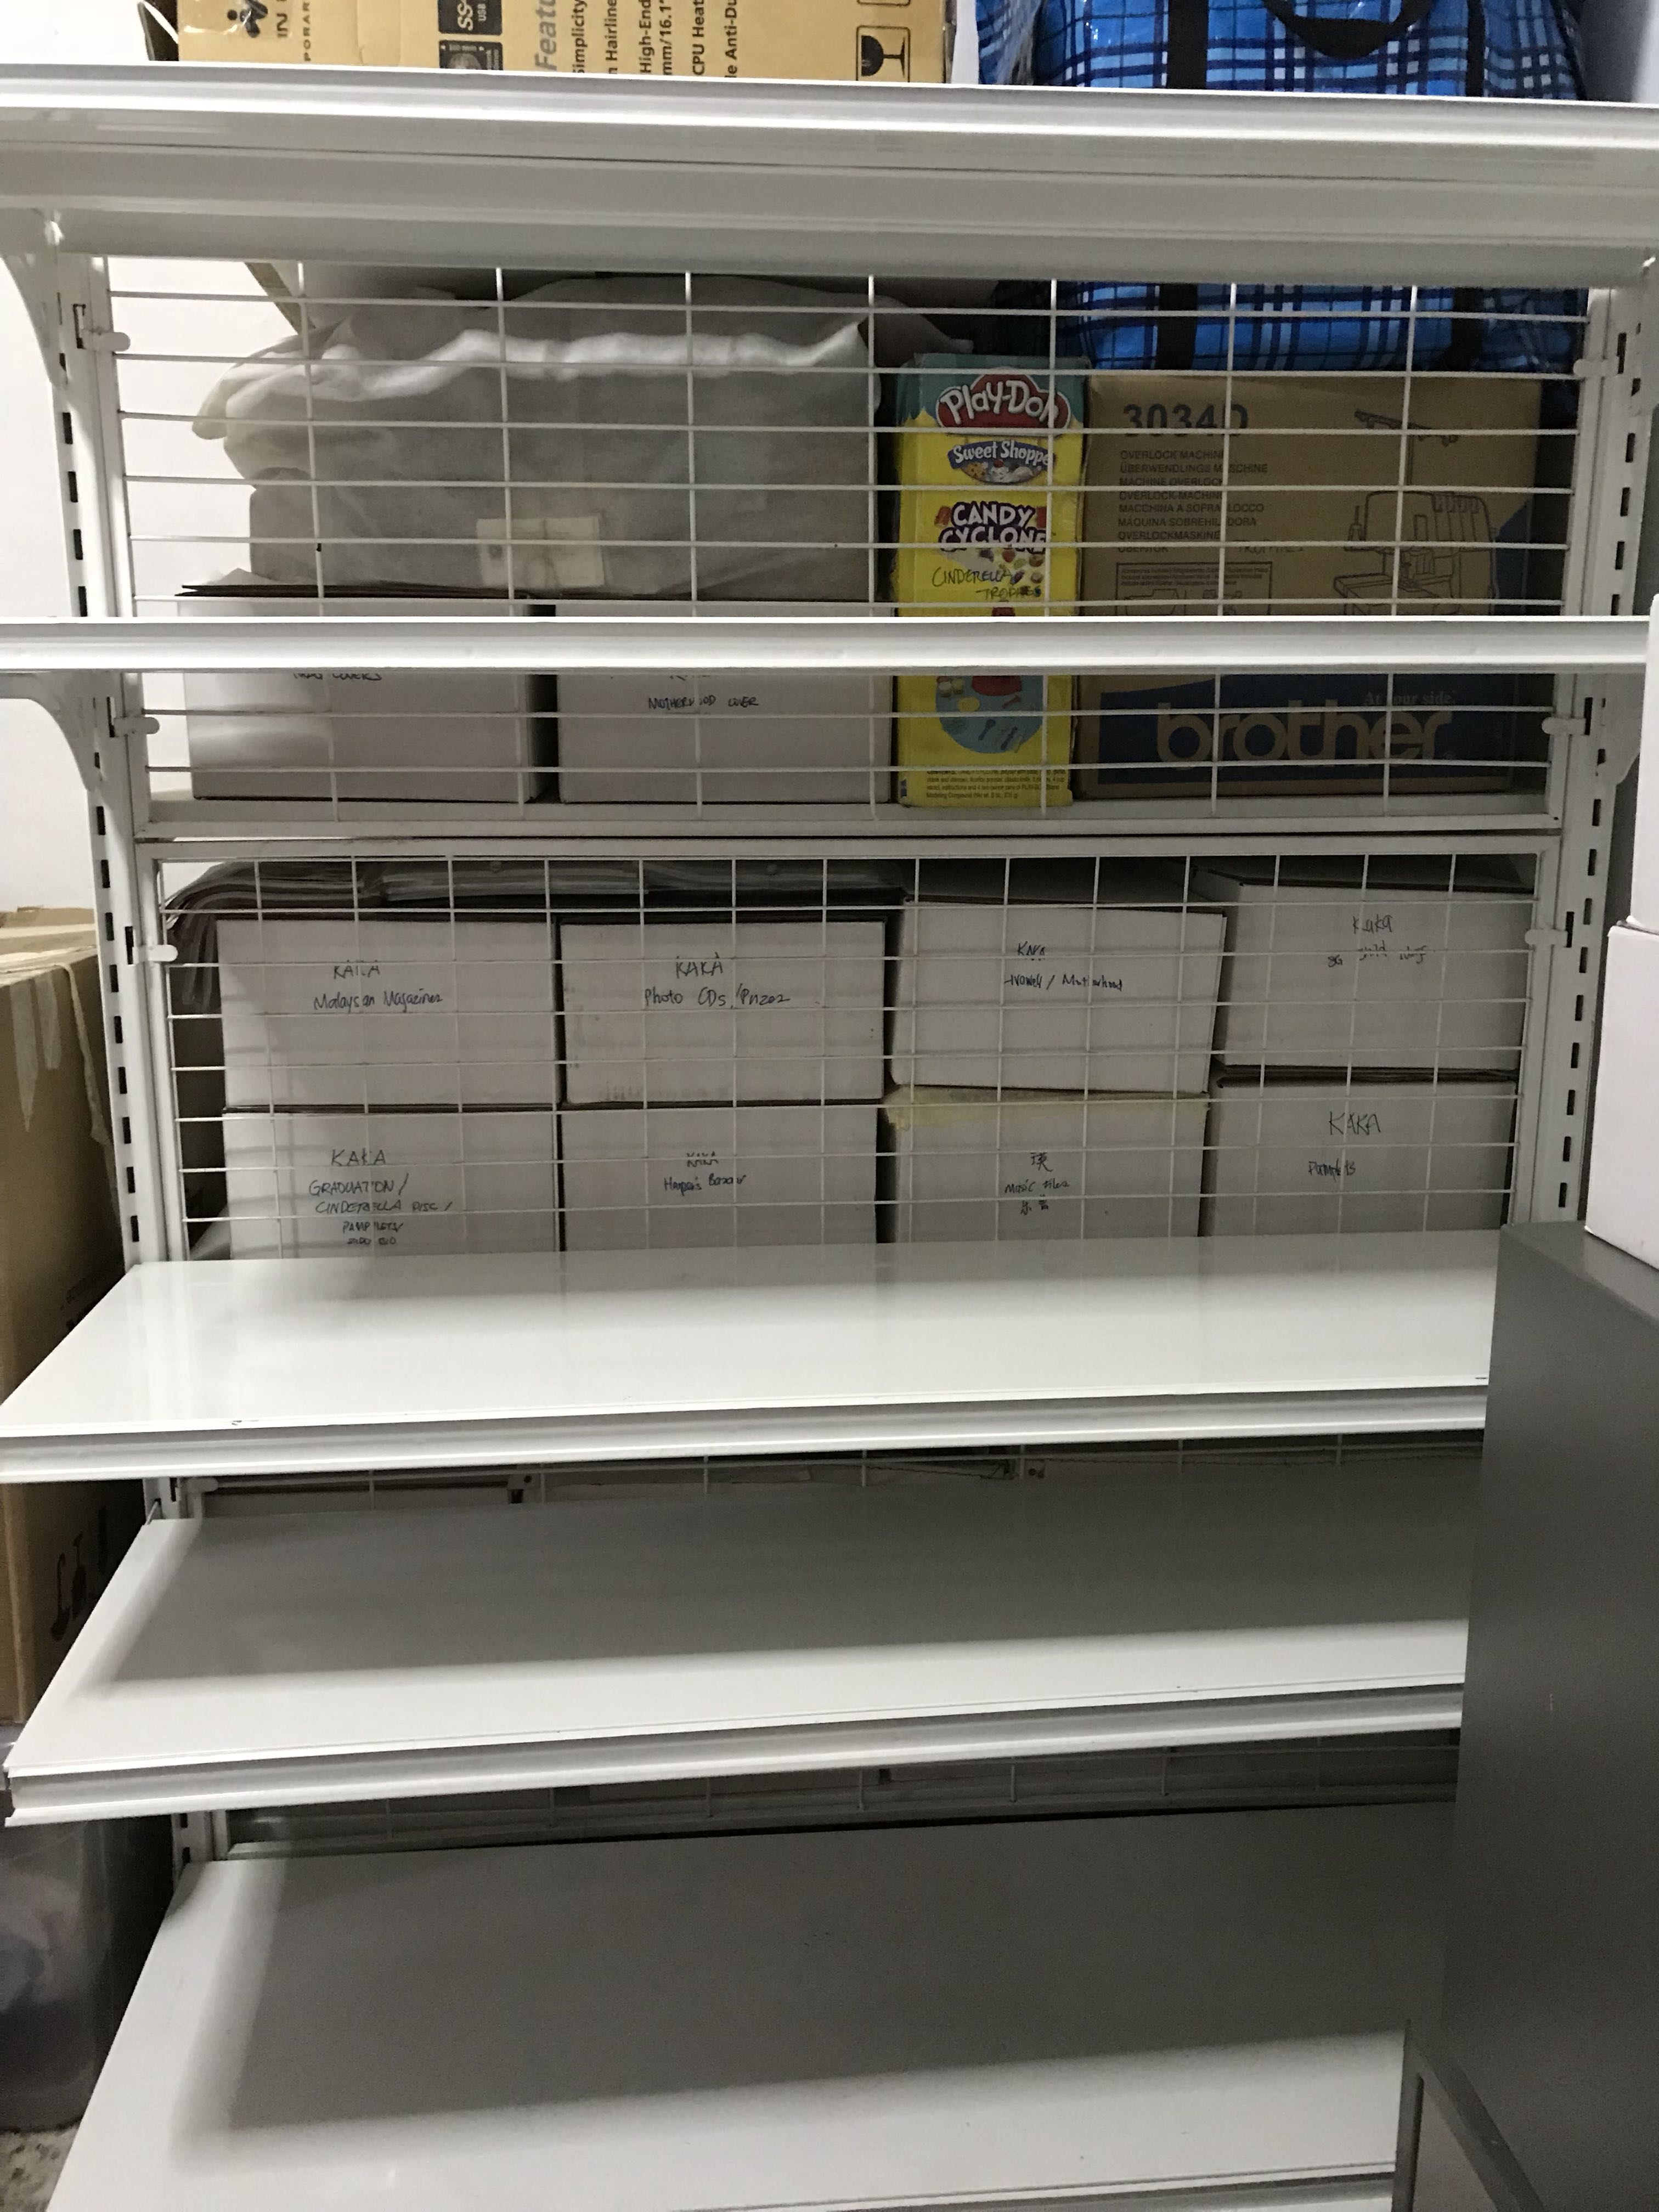 adjustable rack shelf